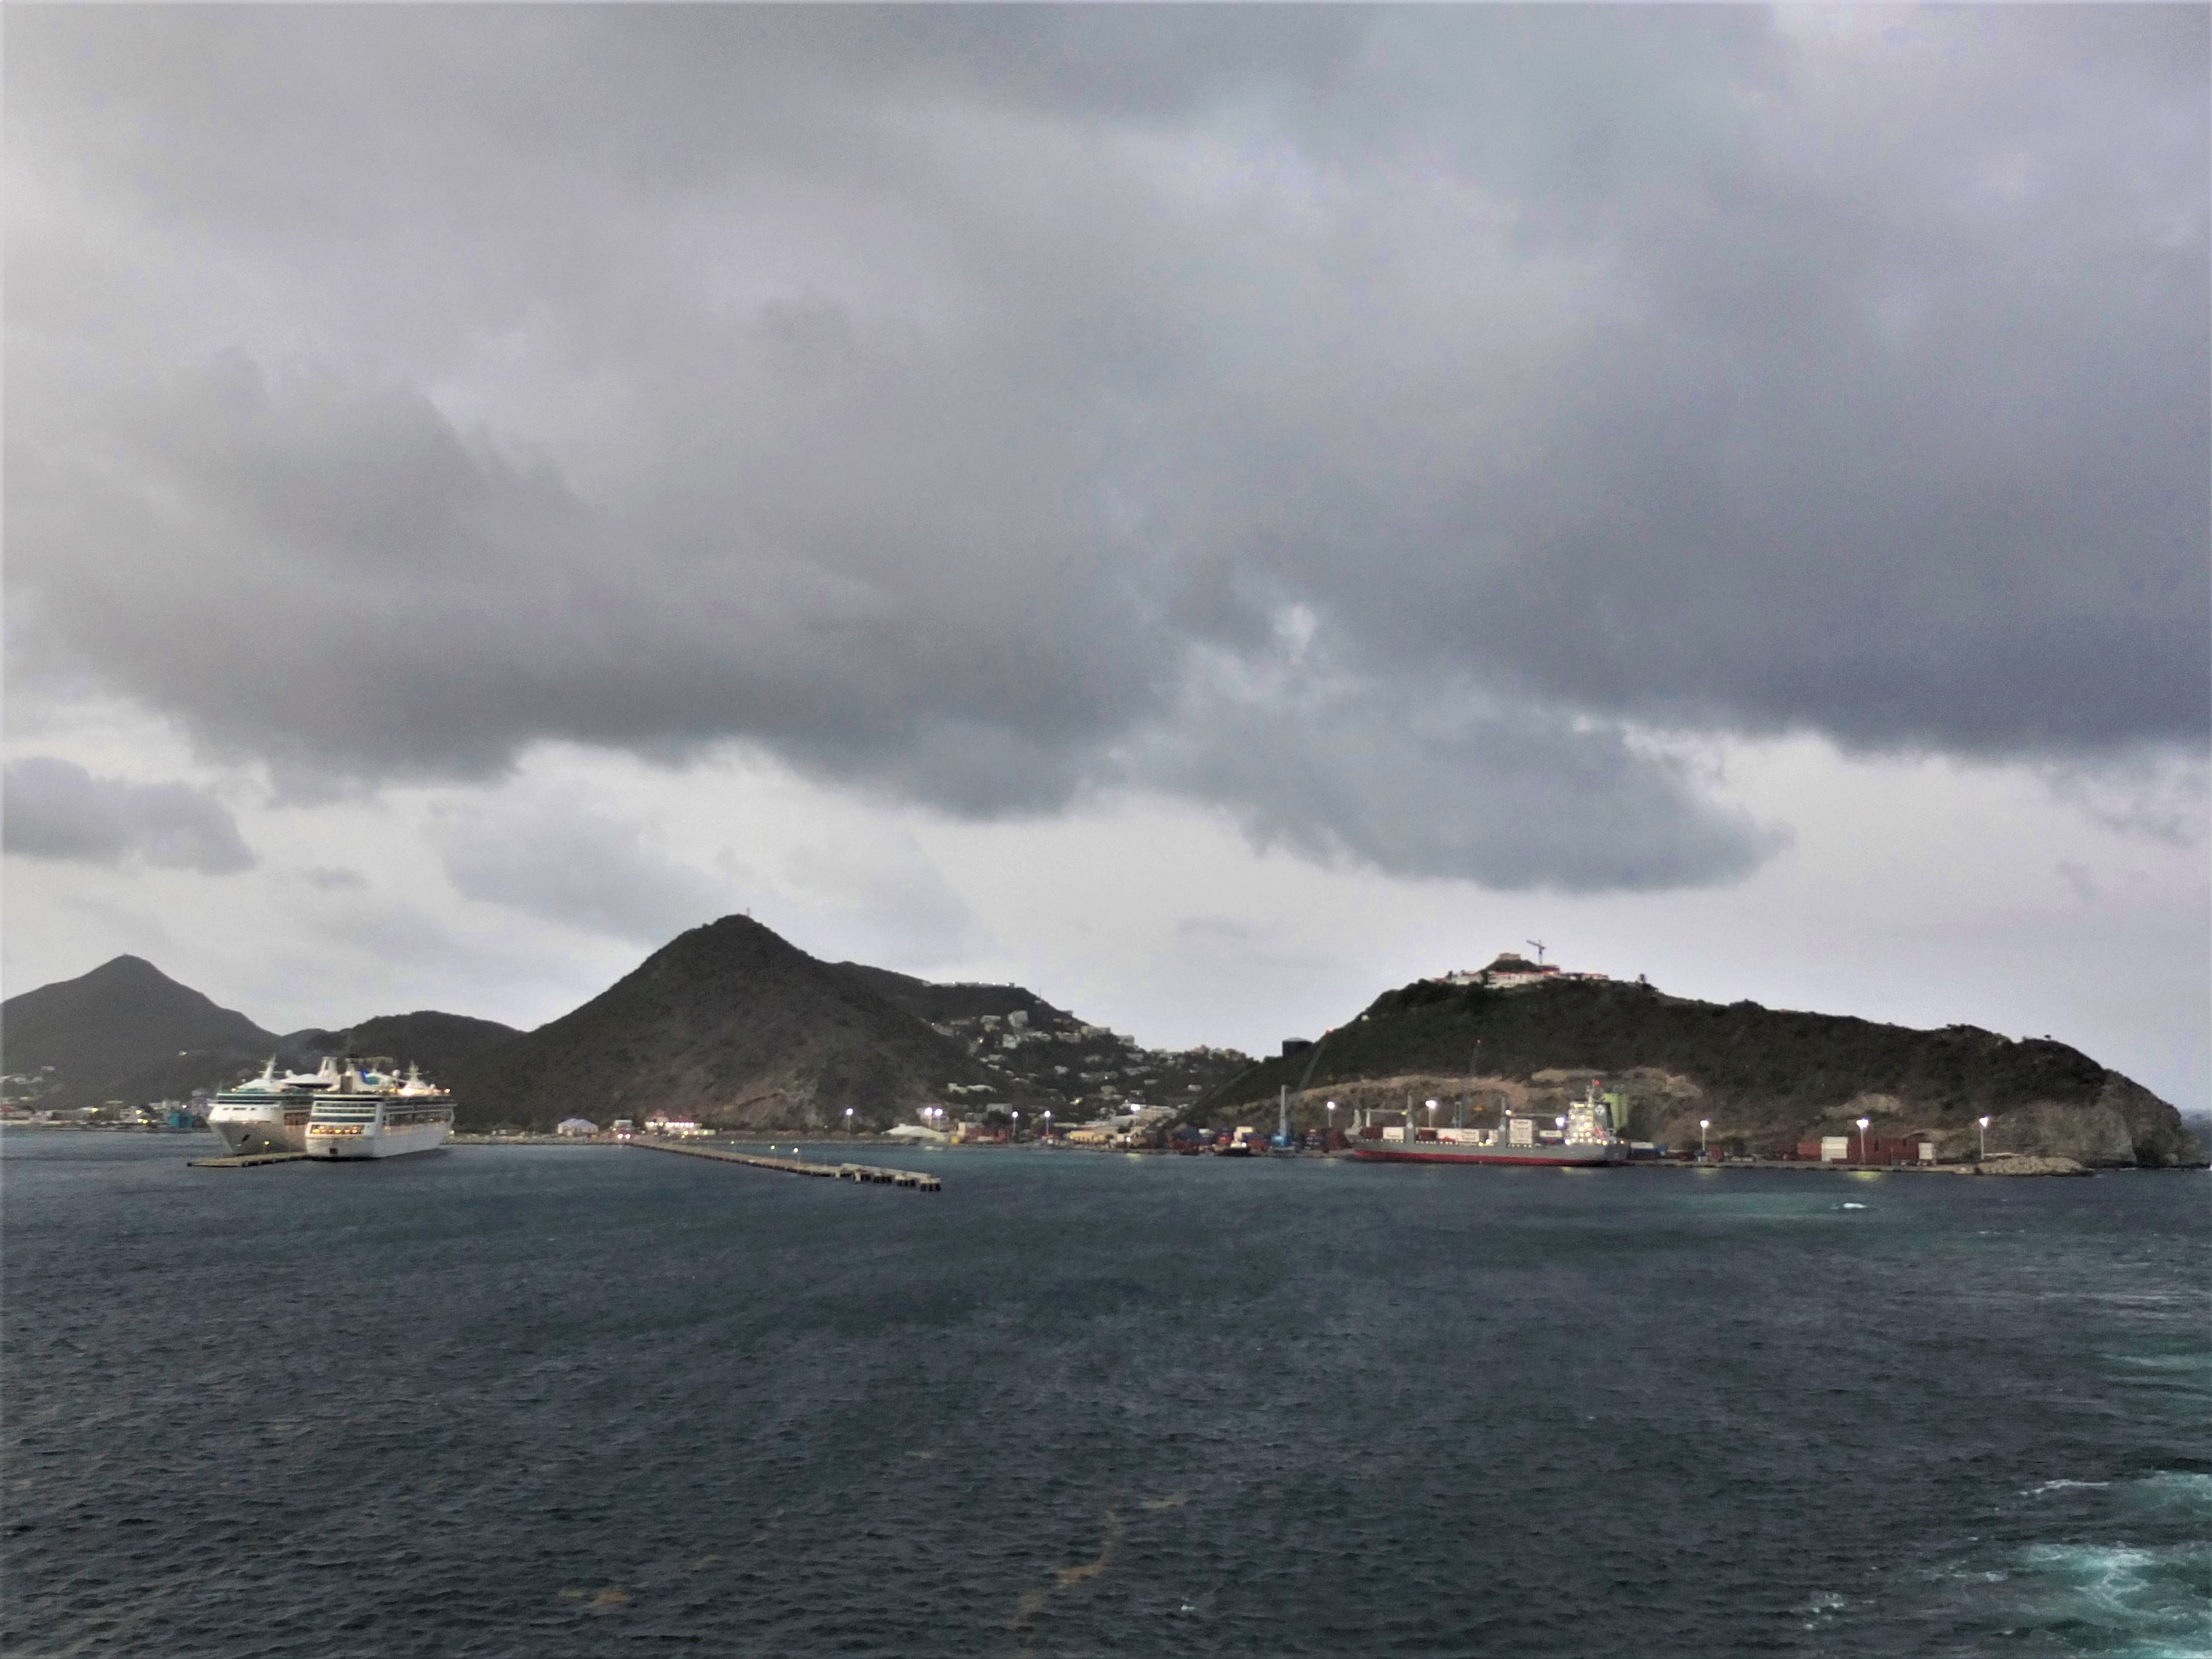 Port of St Maarten